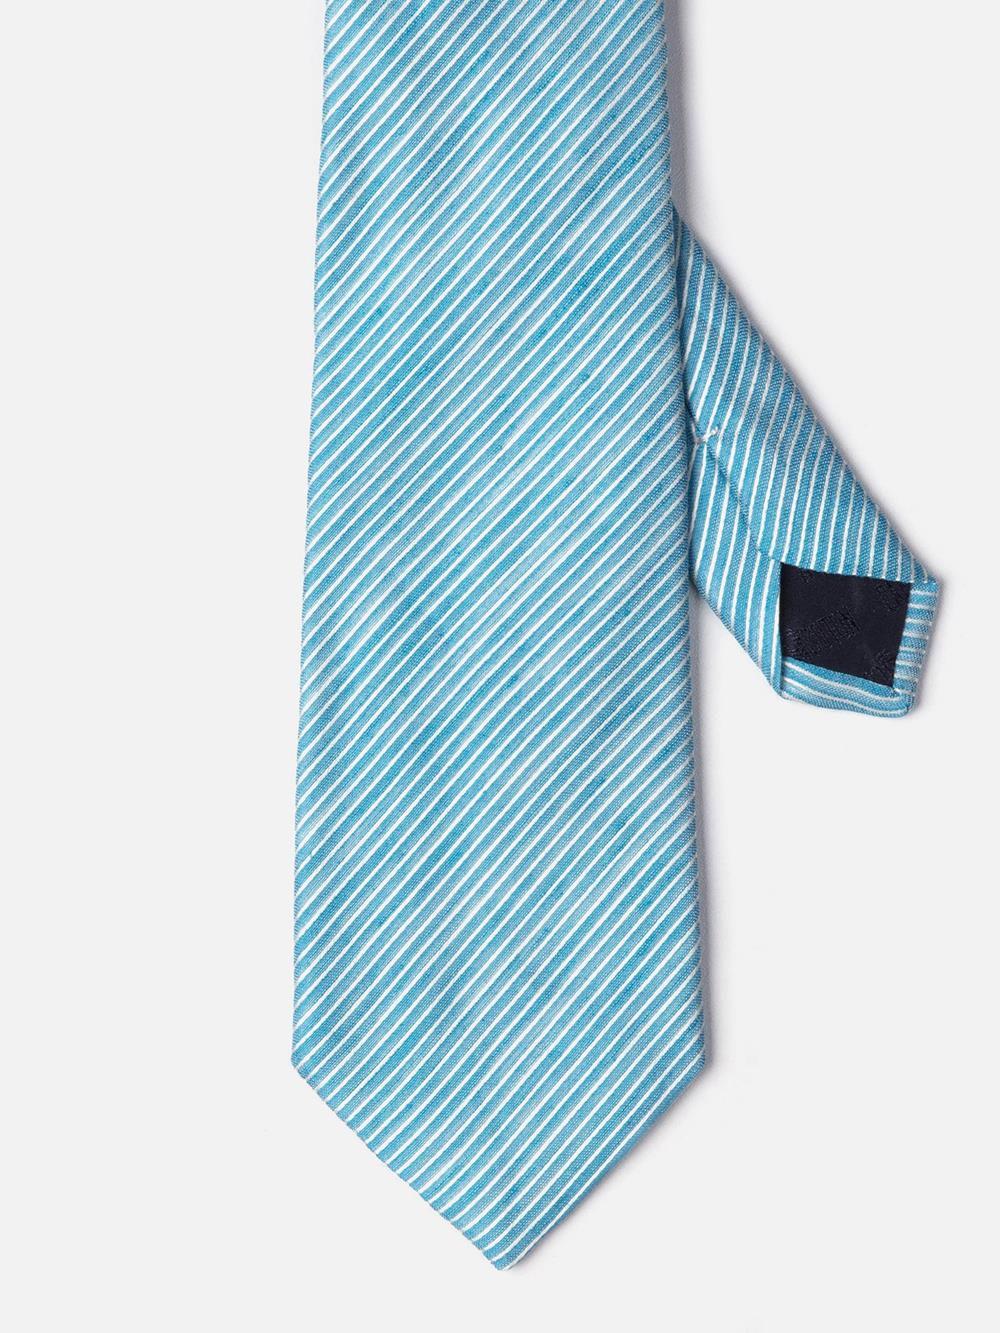 Cravate en lin et soie turquoise à rayures